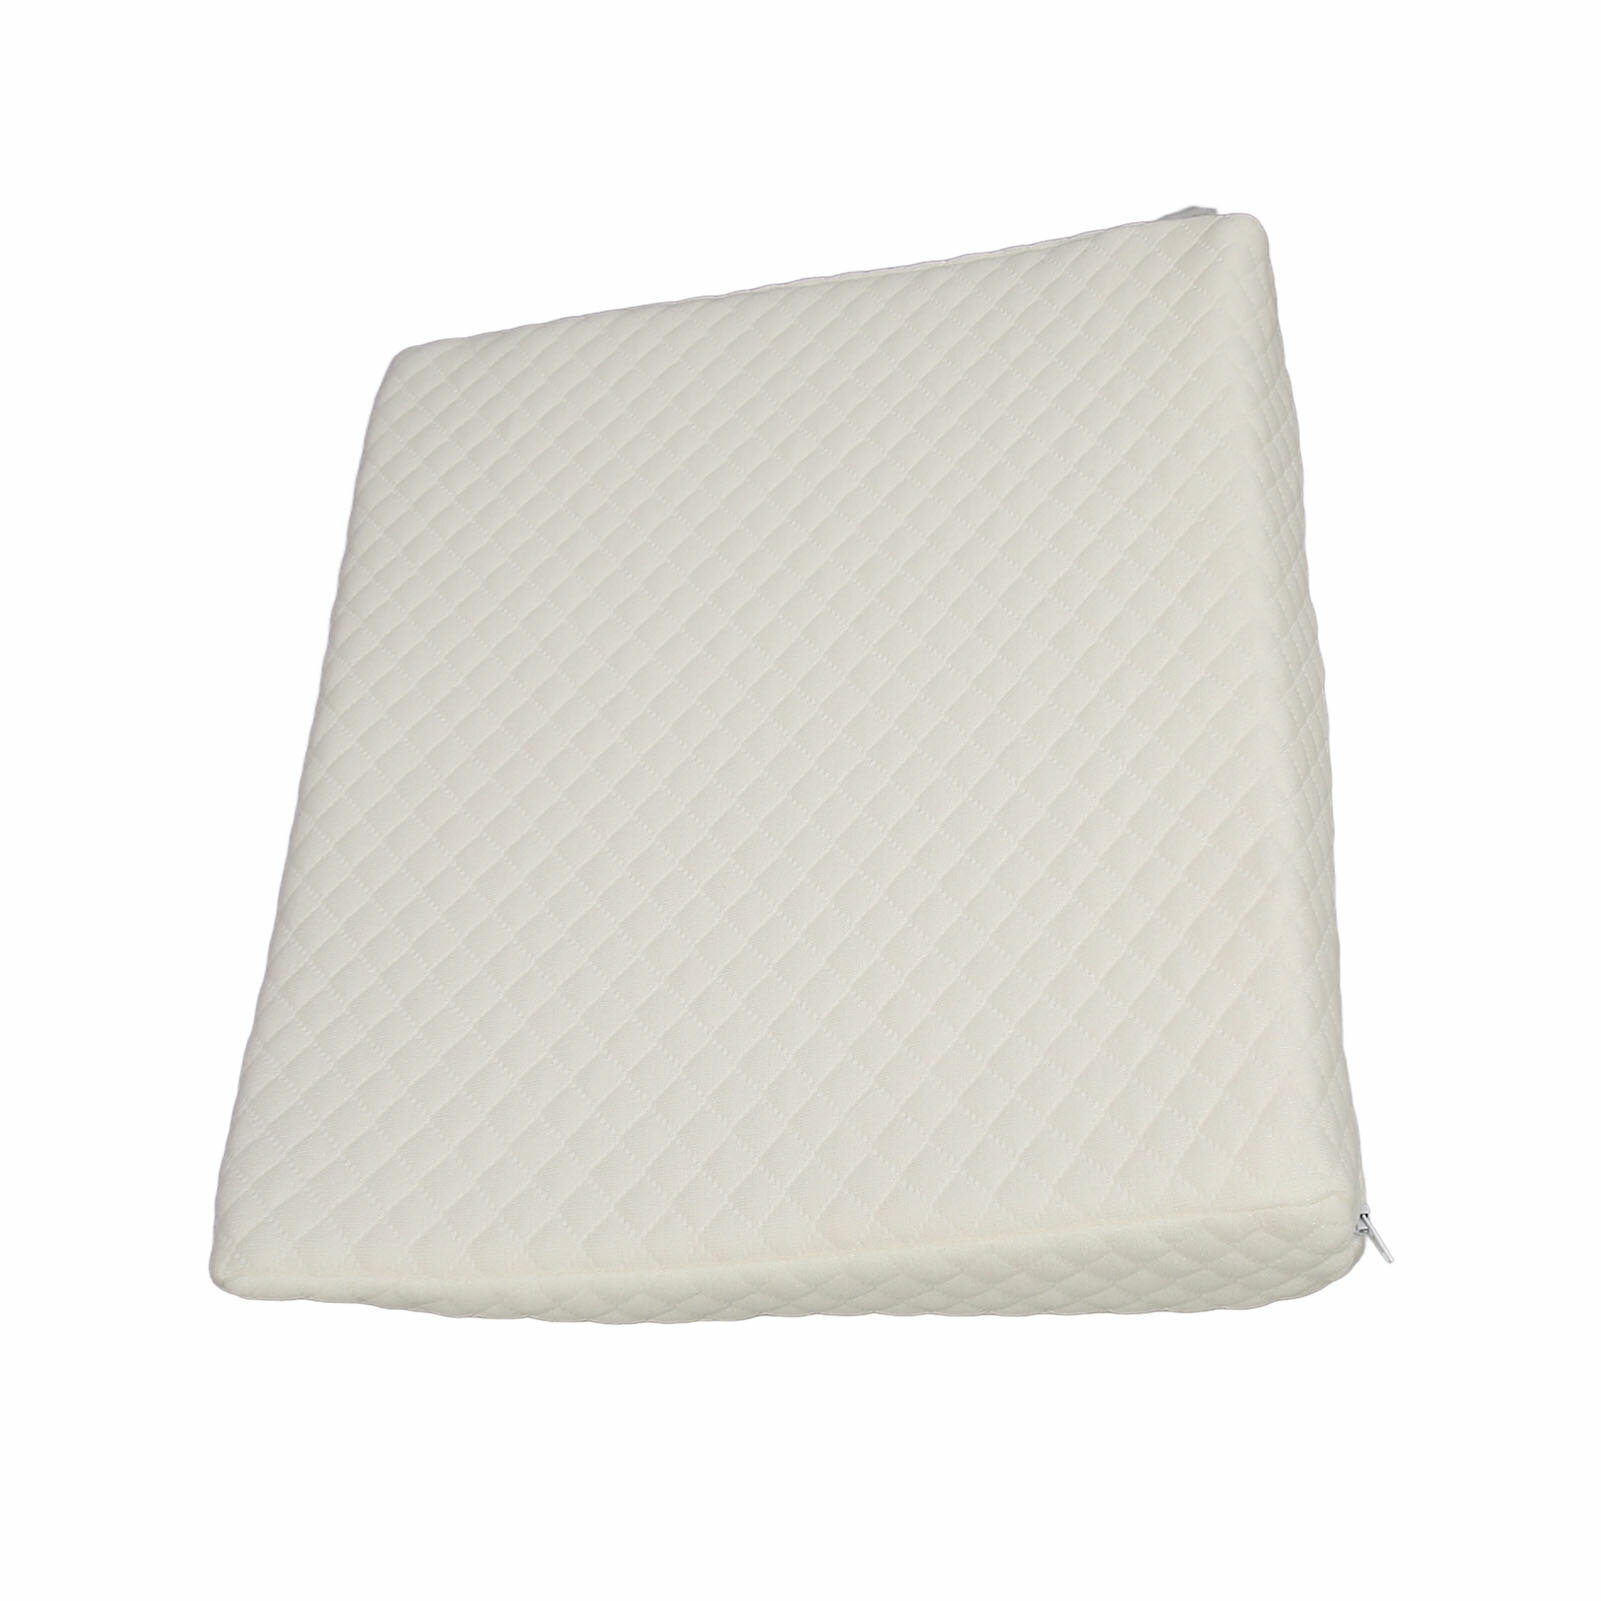 ベビーウェッジ枕 低反発三角枕 通気性のあるコットンカバー 軽量でポータブル 15.7x13.0x2.8インチ